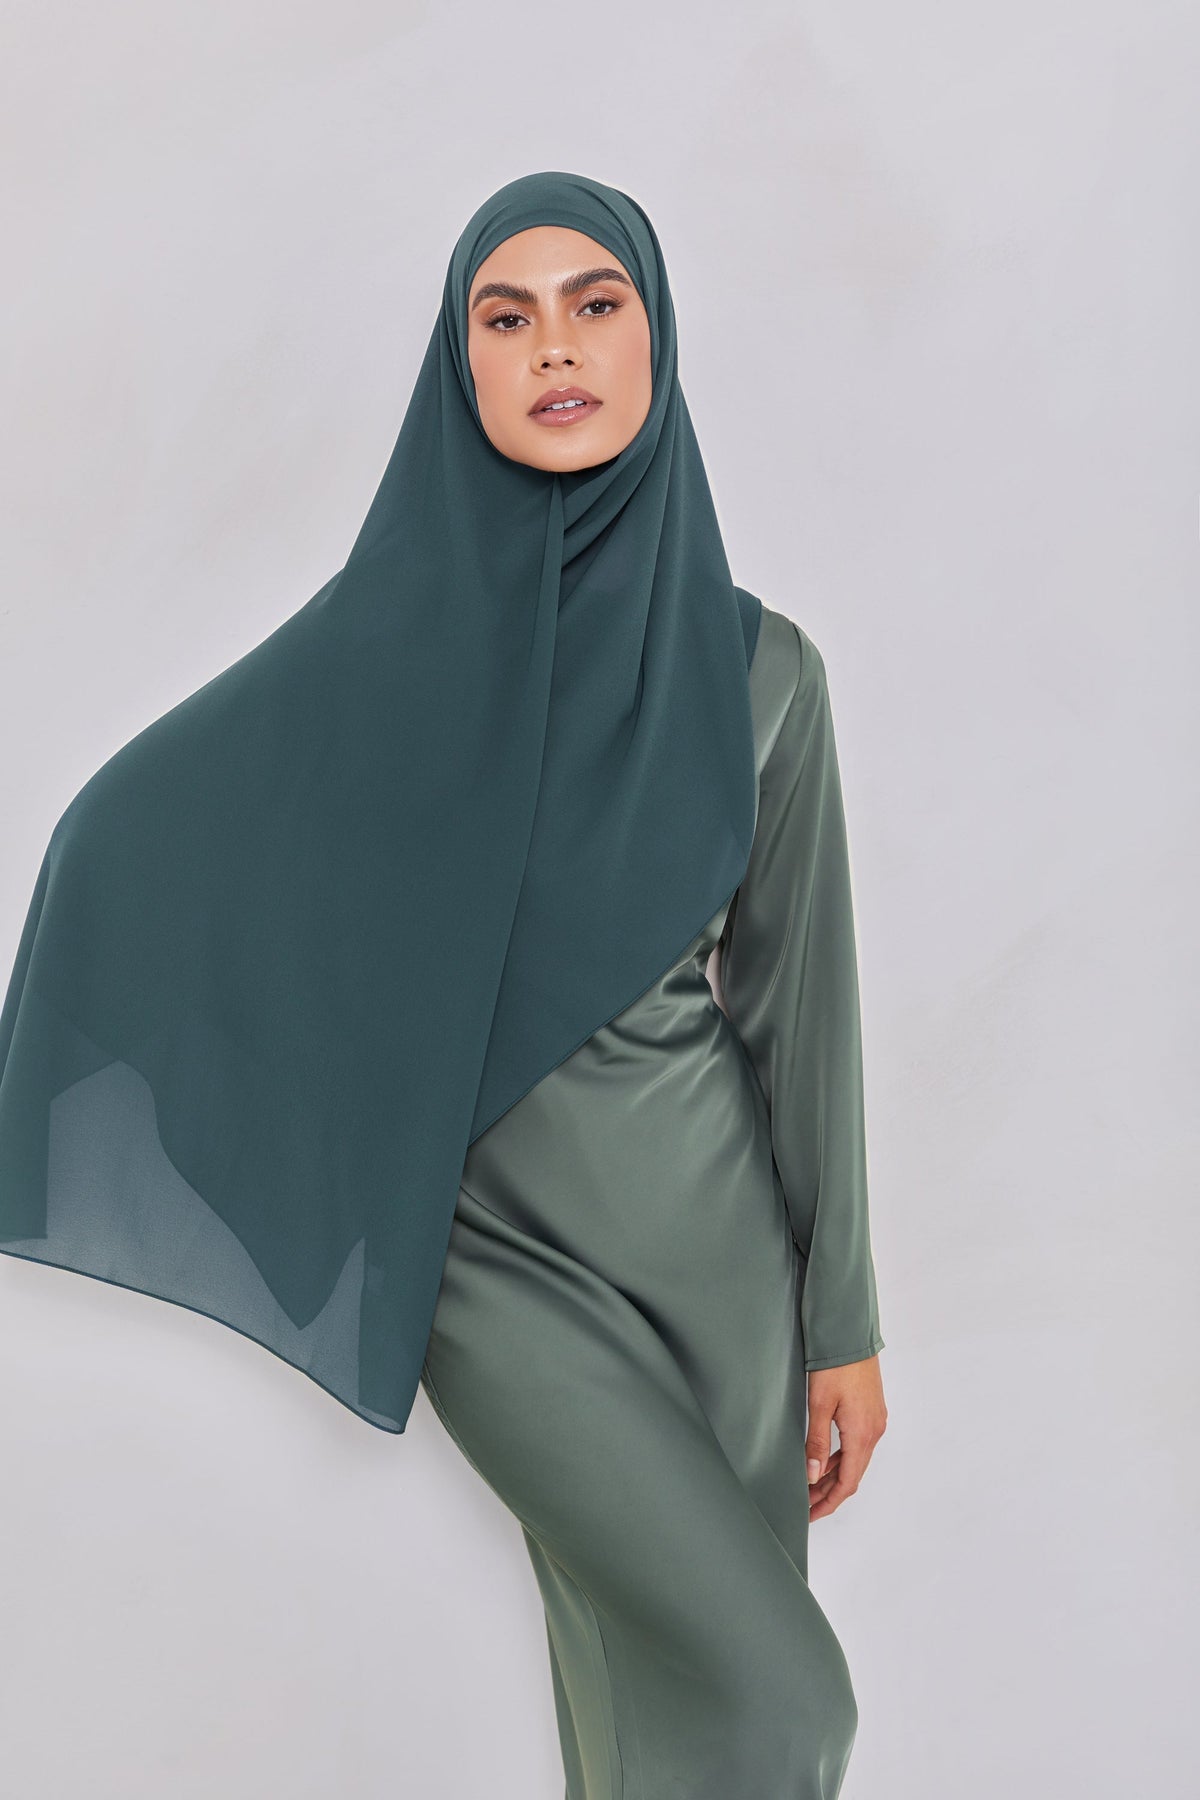 Essential Chiffon Hijab - Teal Scarves & Shawls epschoolboard 